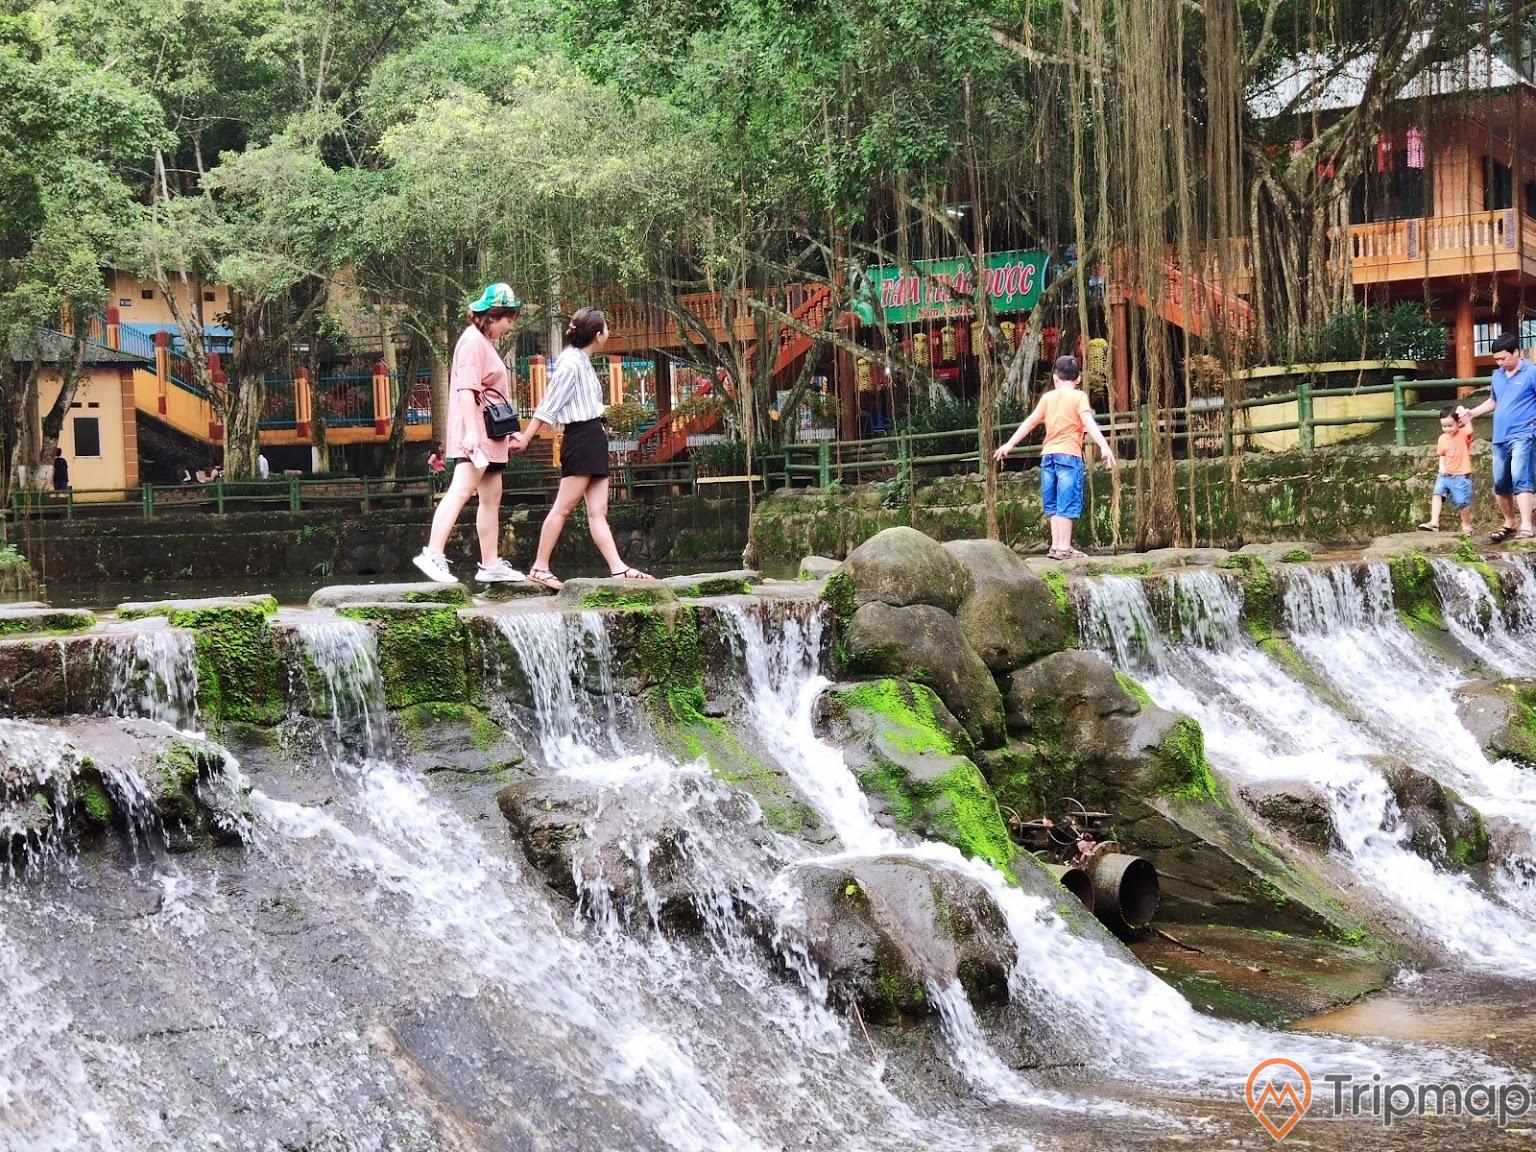 du khách tham quan hồ nước khu du lịch ao vua, 5 người đang đi trên bờ hồ có thác nước đang chảy, cây cối và nhà cửa gần hồ nước